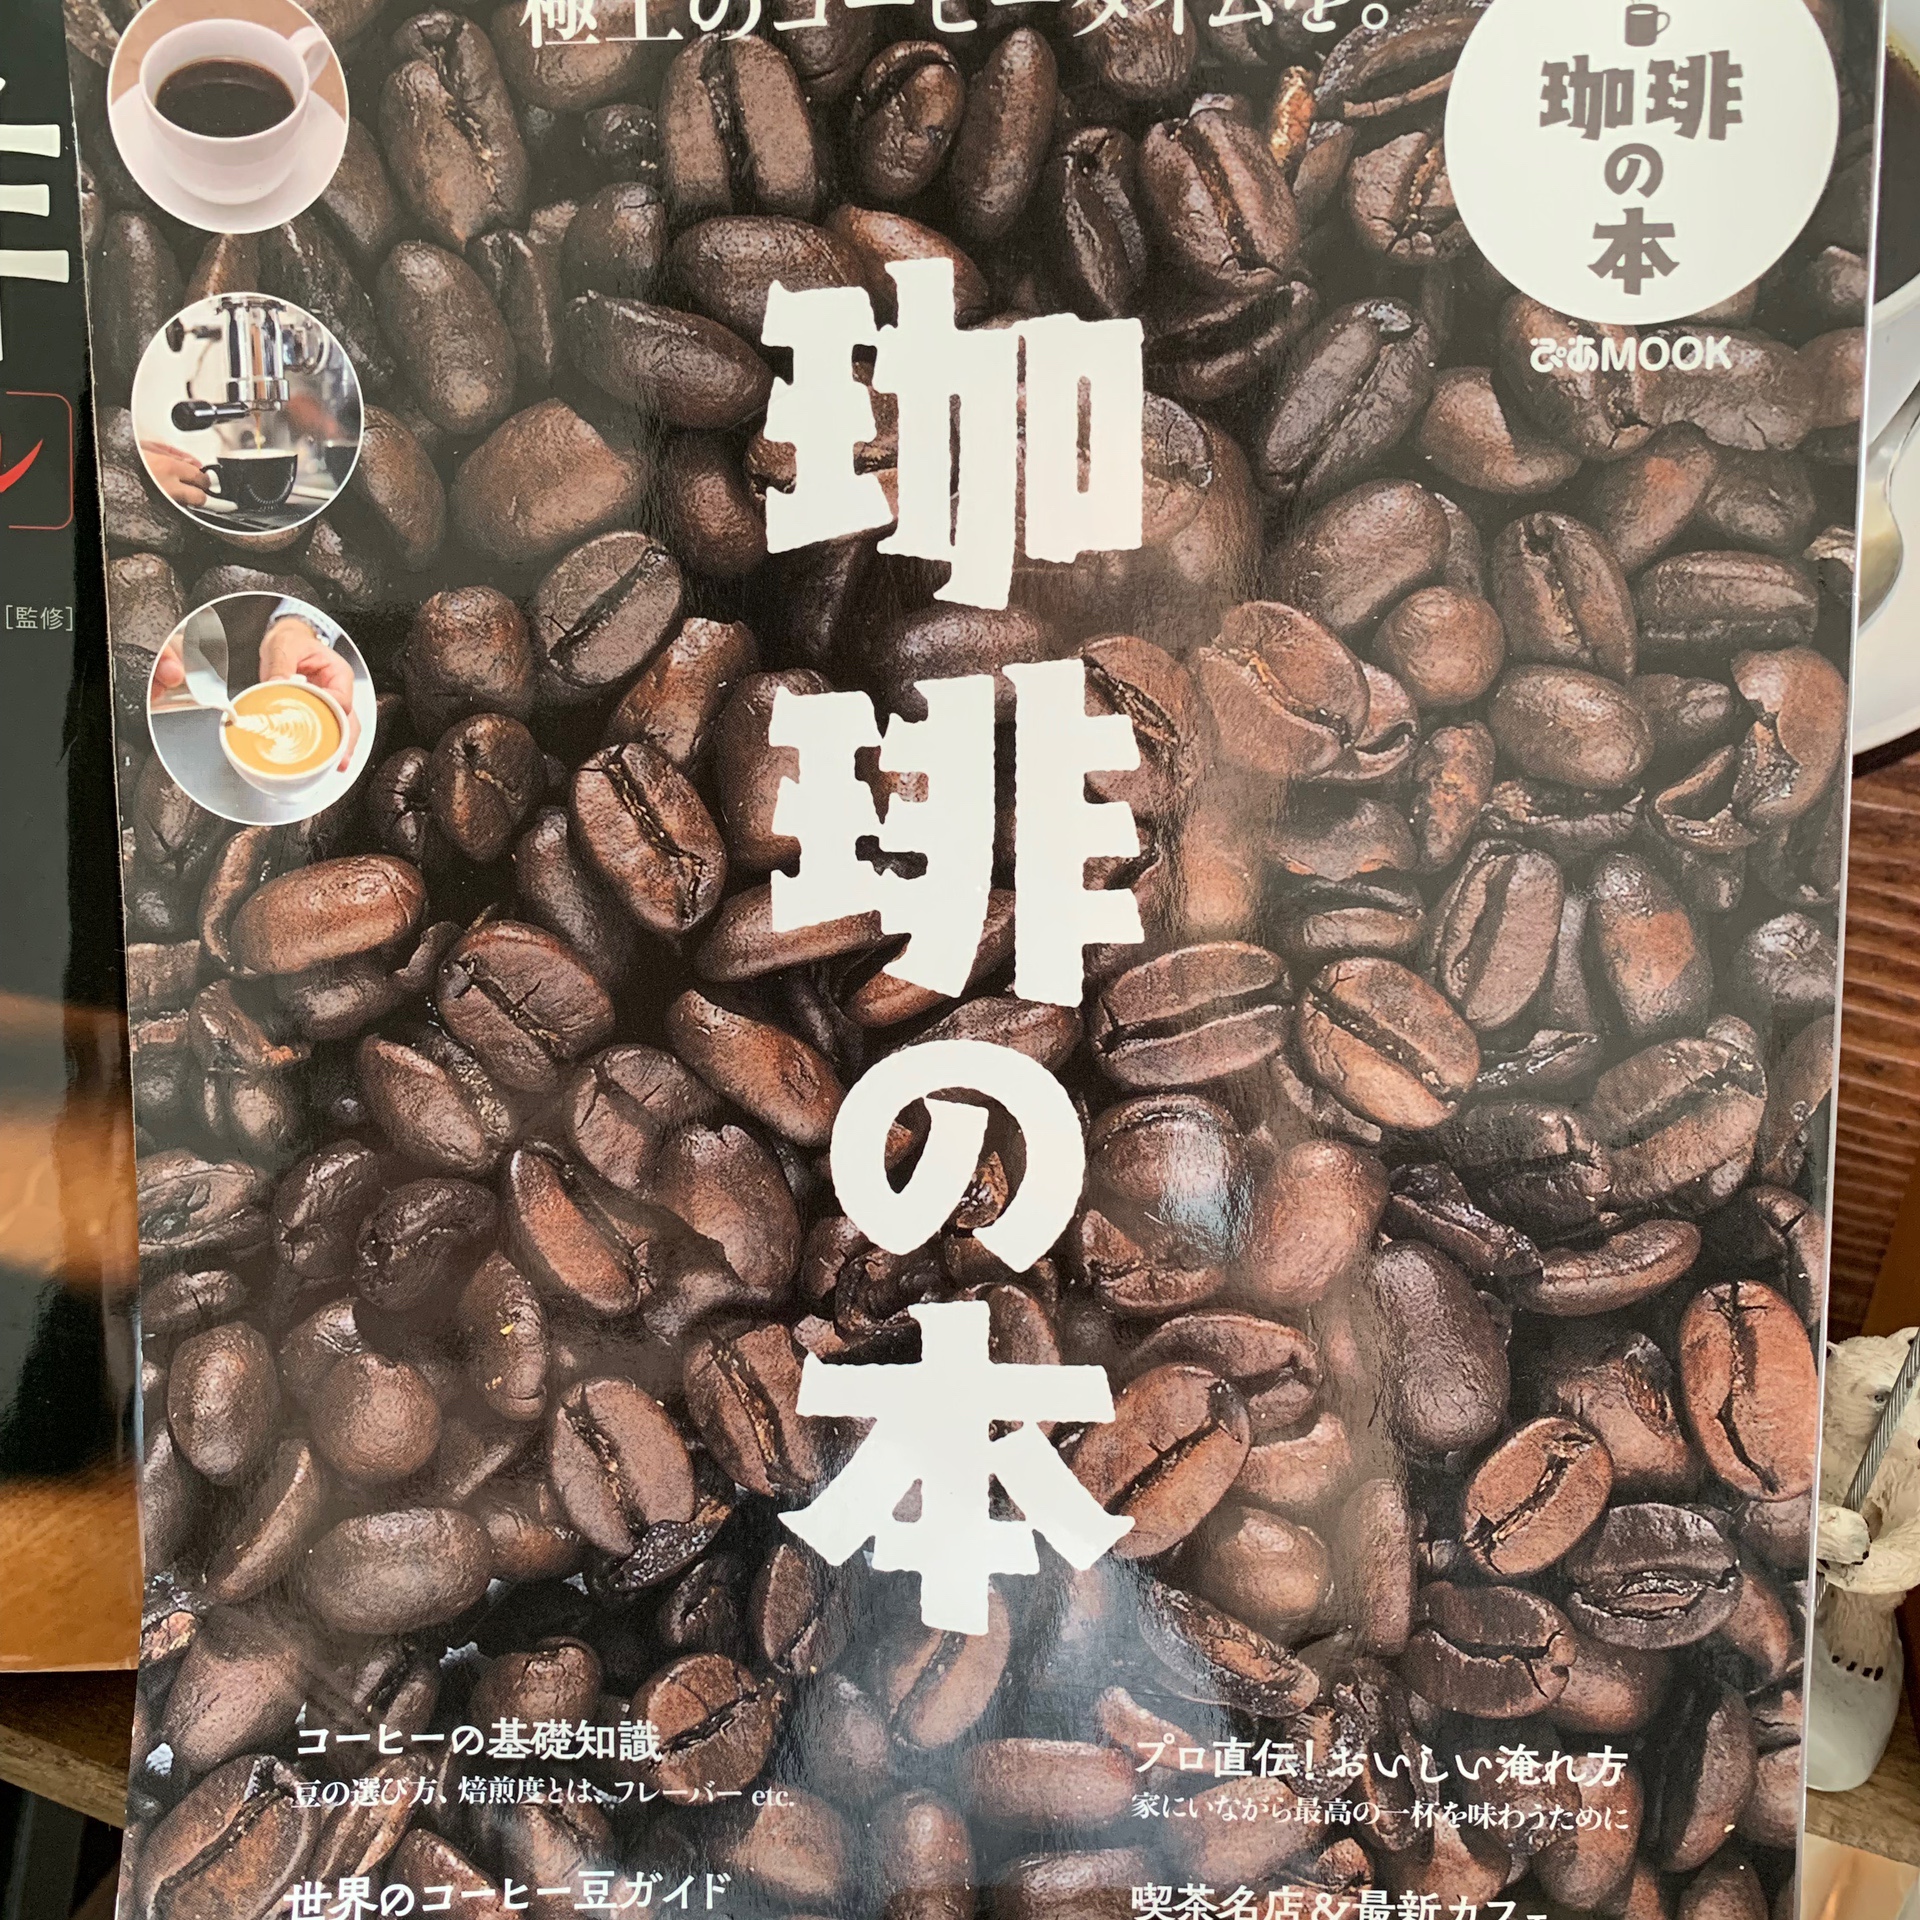 【珈琲の本】ライトなコーヒー好きにおすすめな本。これがその本の題名です。